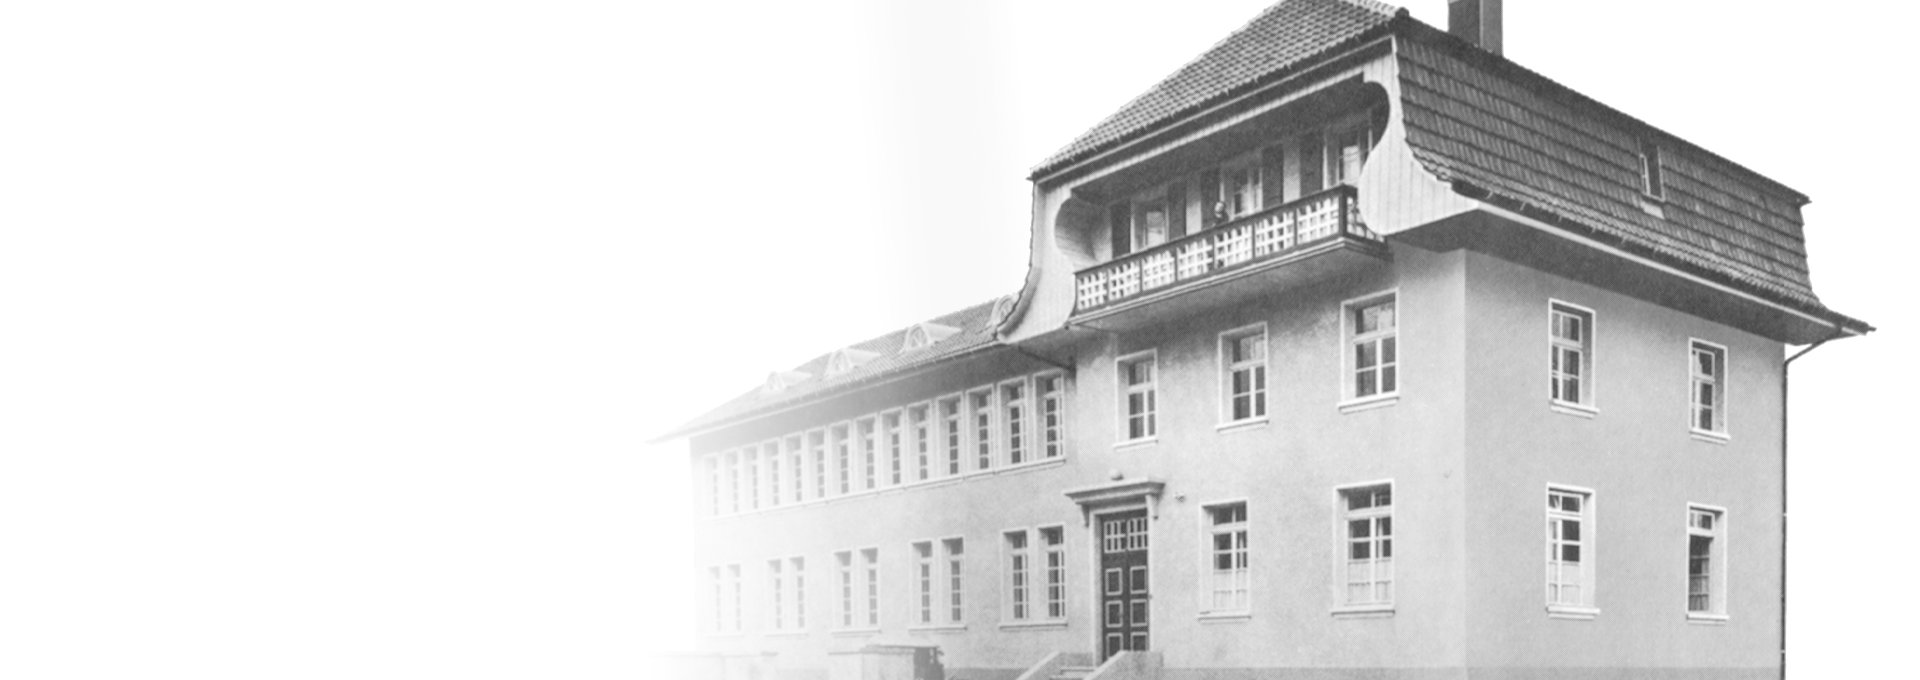 Vanha mustavalkoinen valokuva Bernafonin ensimmäisestä tehtaasta Flamattissa, lähellä Berniä, Sveitsi, 1925